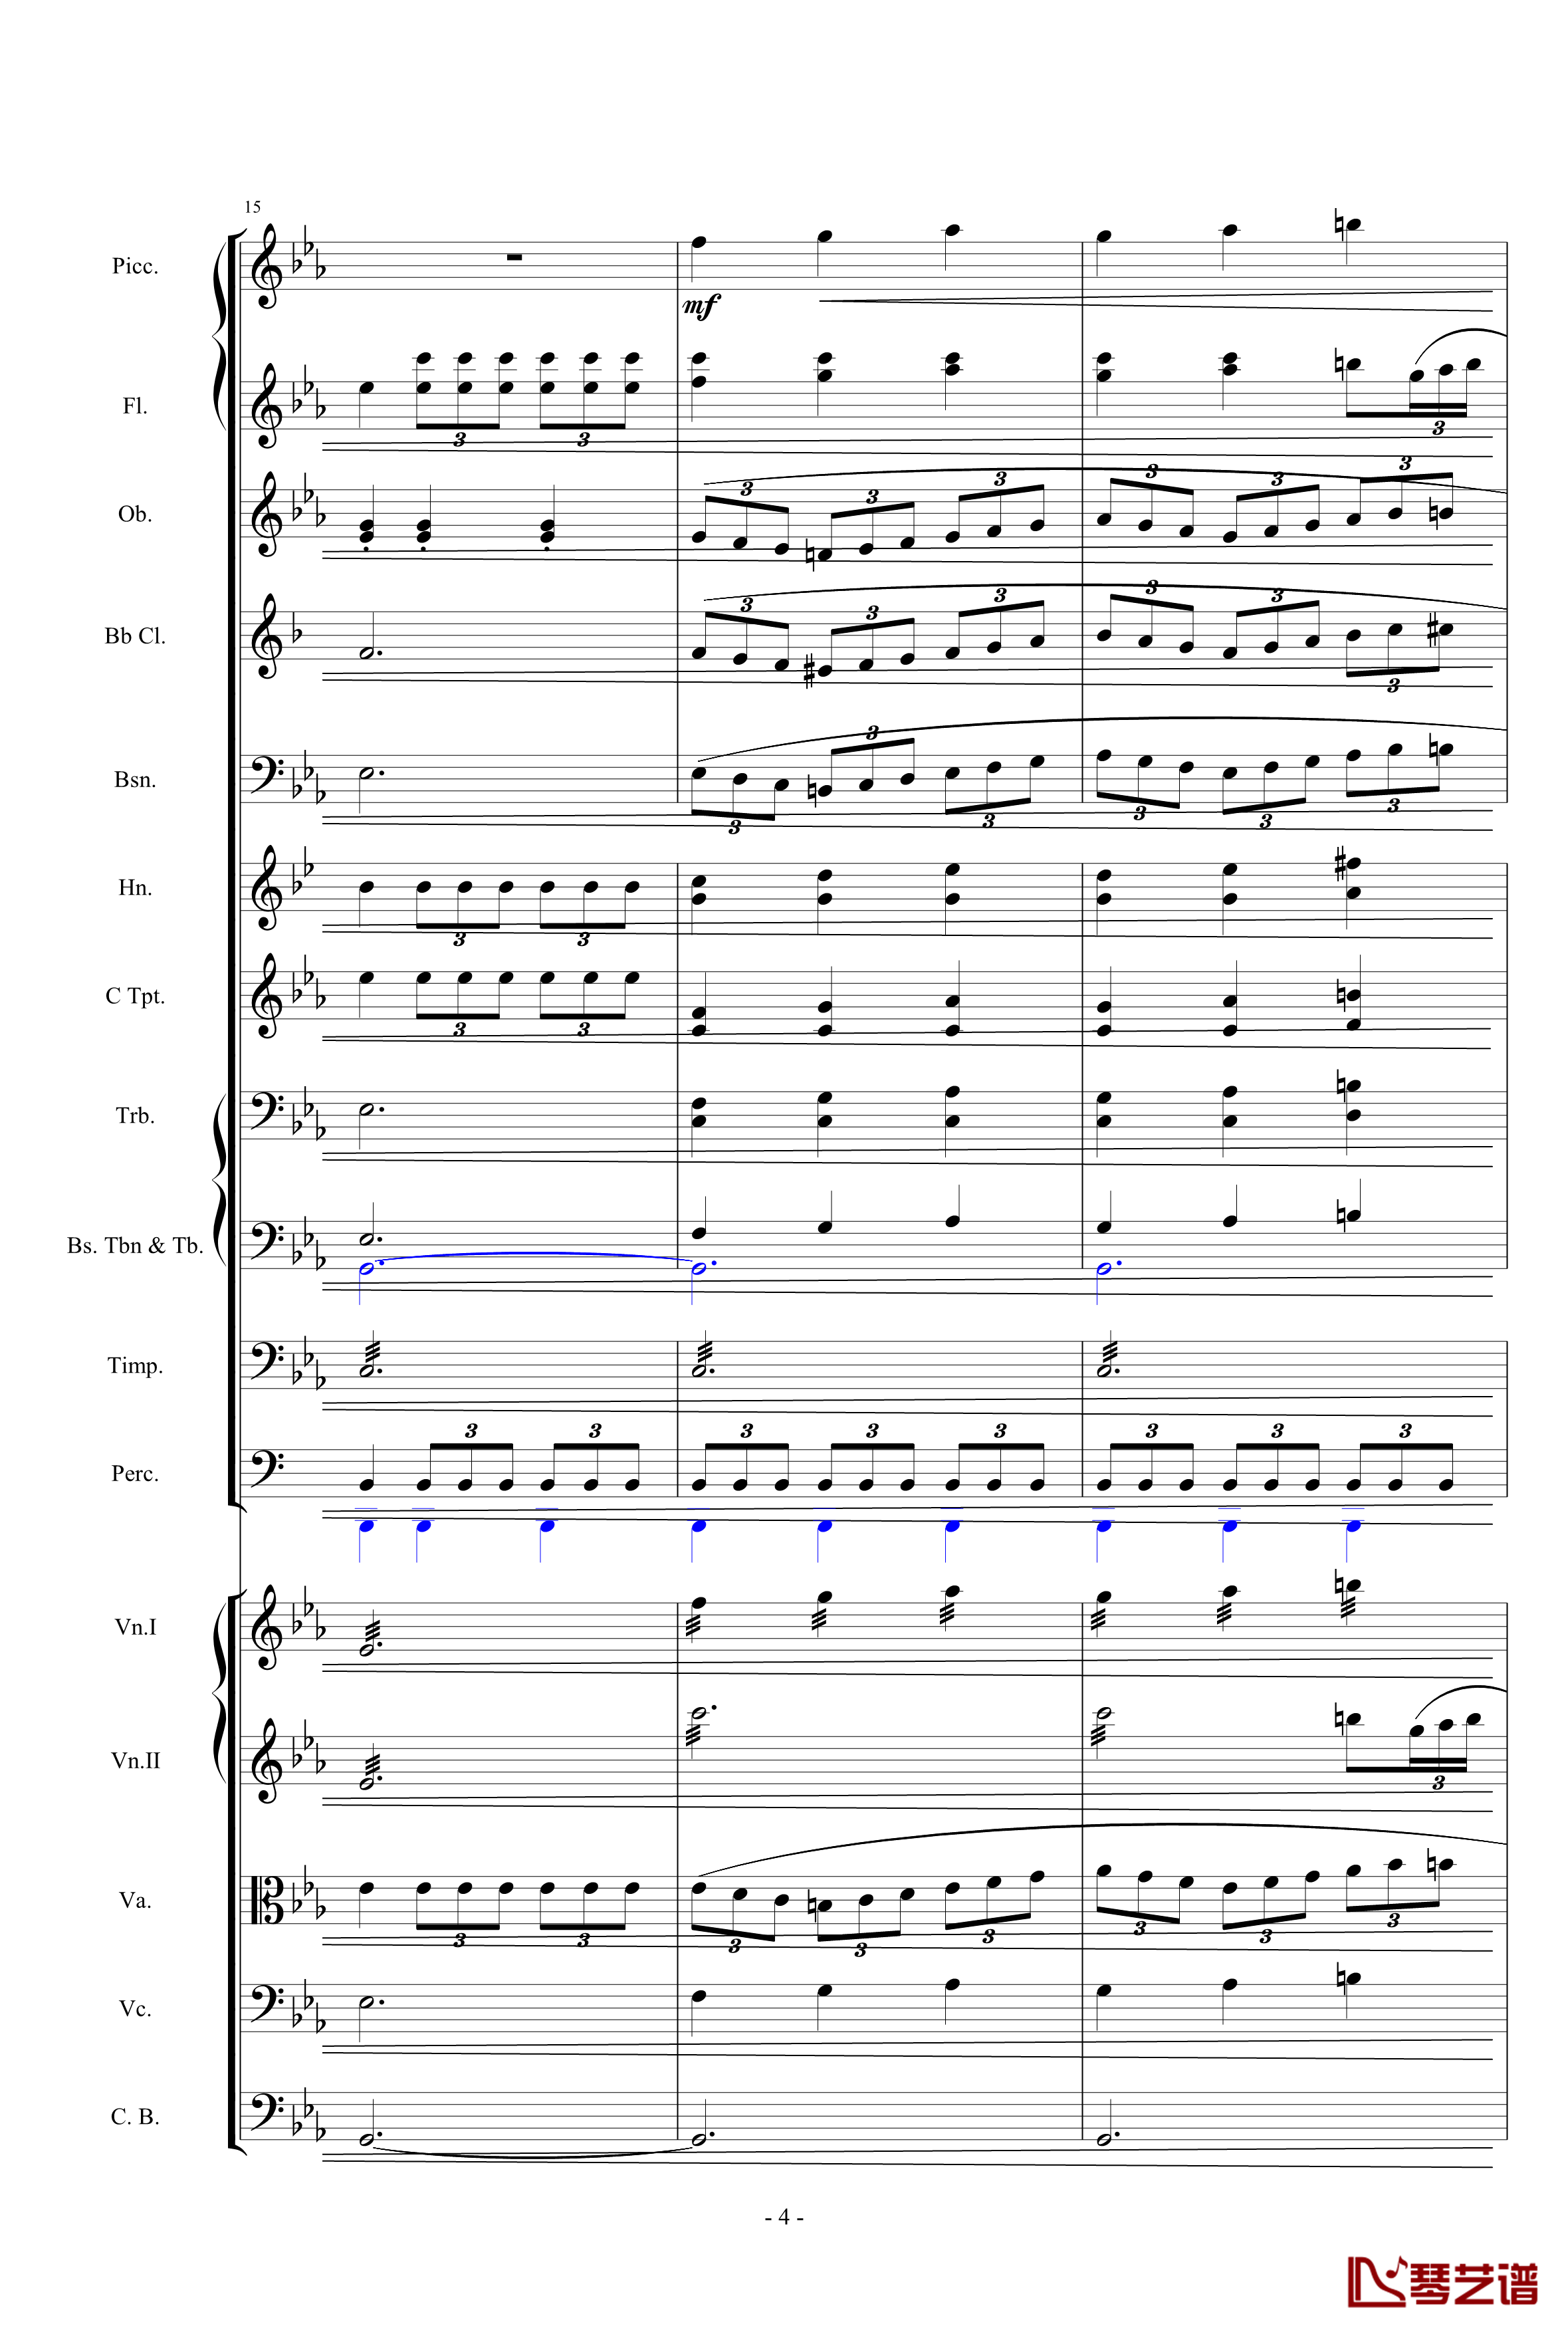 愤怒的小鸟交响曲第三乐章Op.5 no.3钢琴谱-105725784